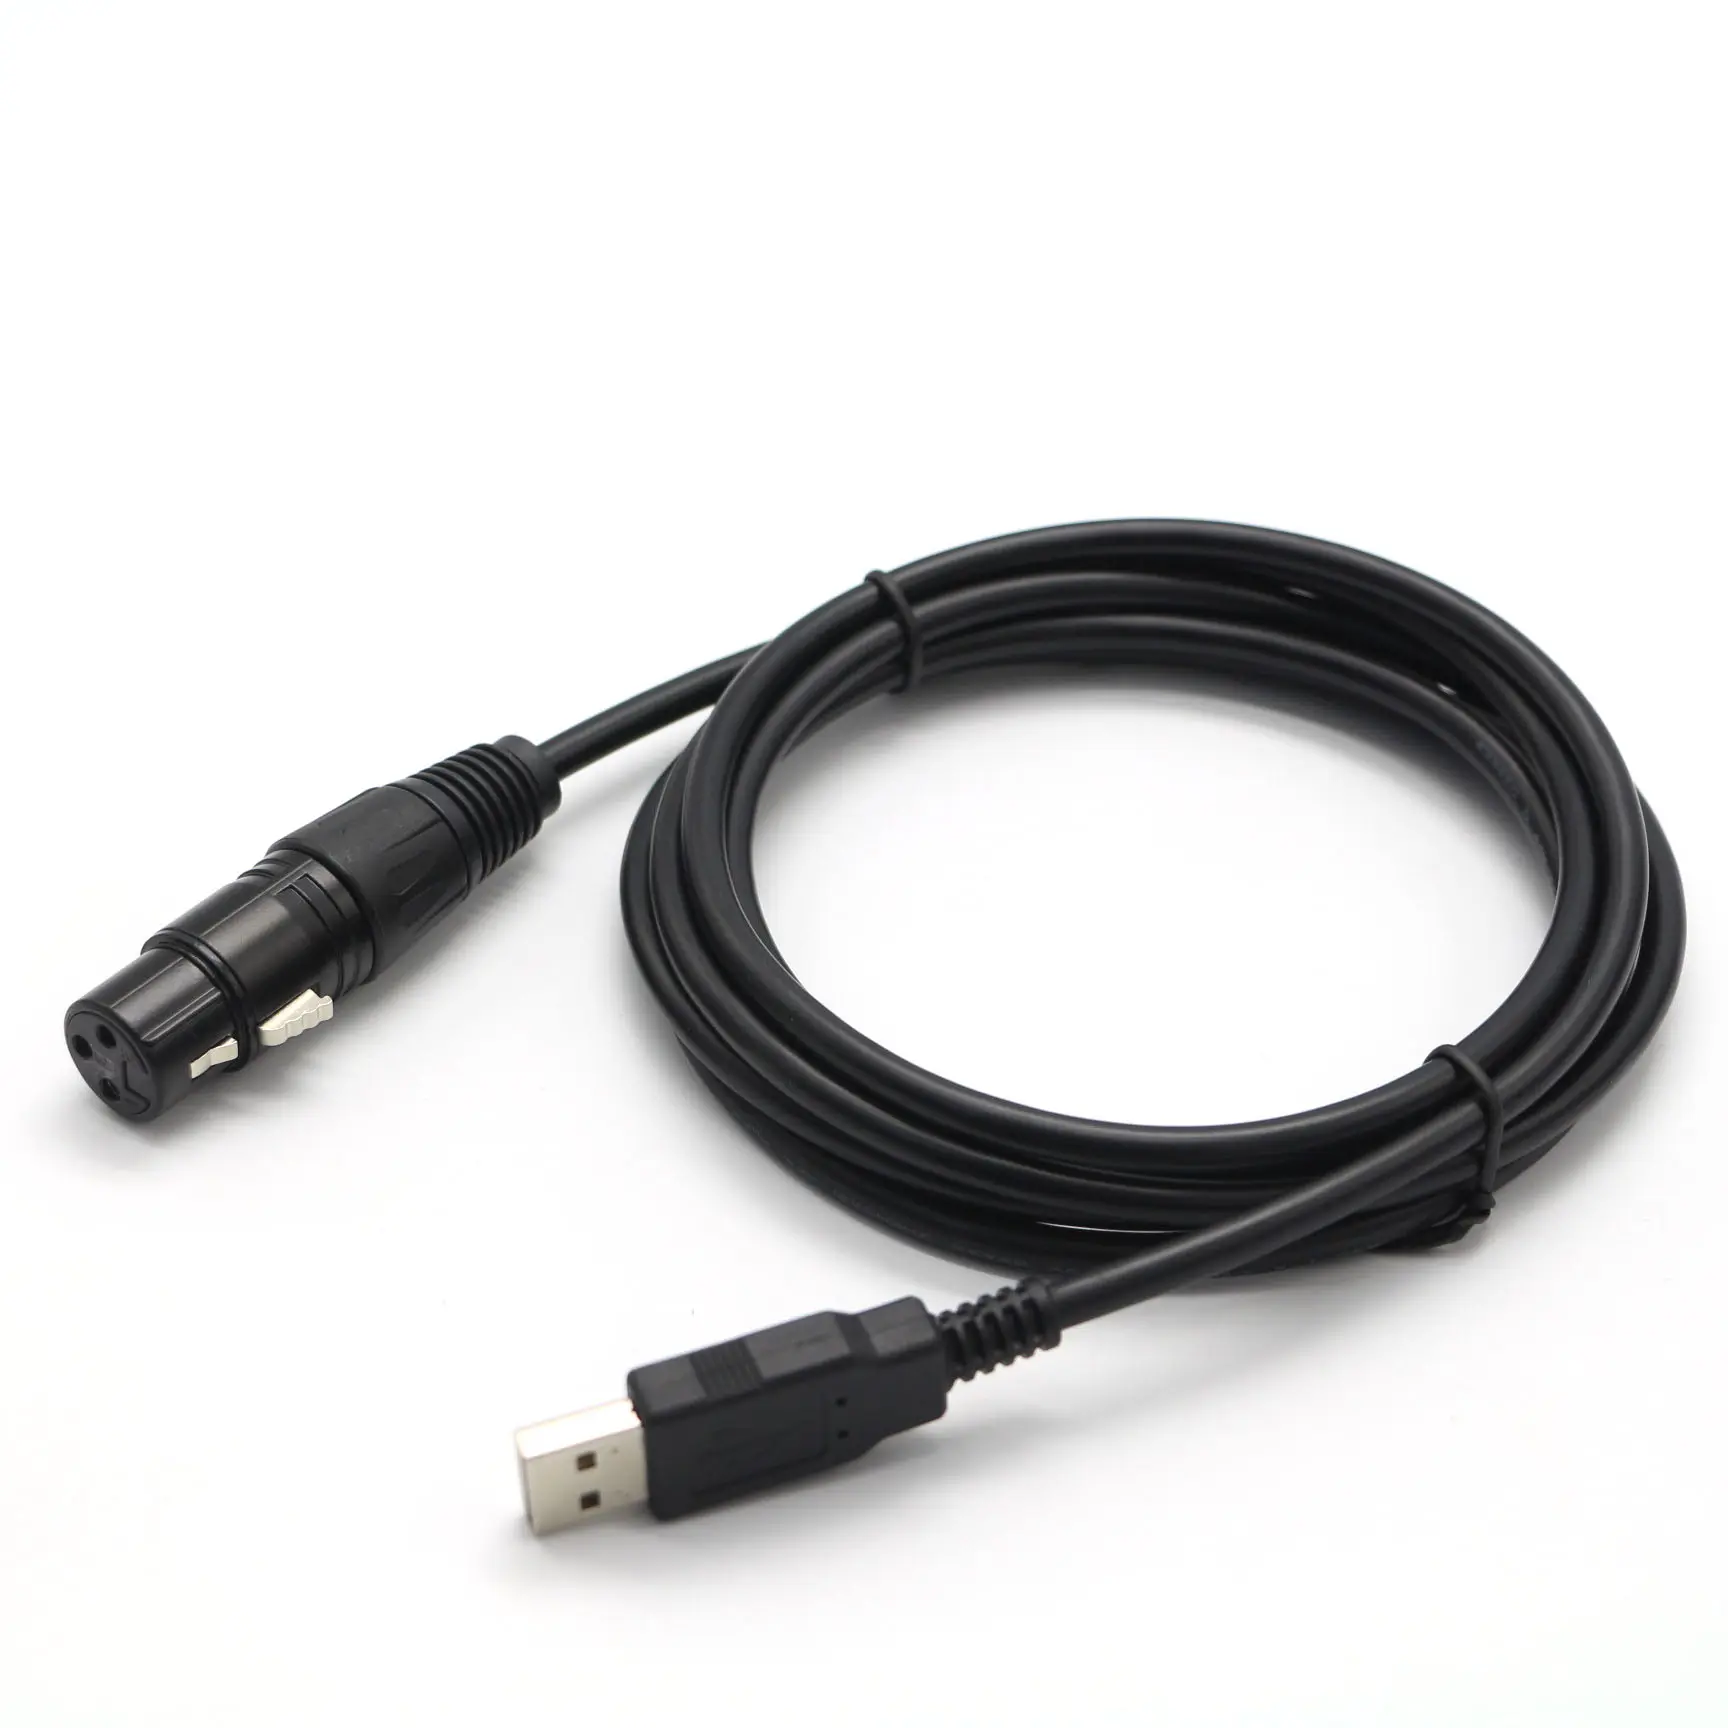 OEM USB A erkek XLR erkek ses konsolu için XLR kablo için dijital ses kablosu